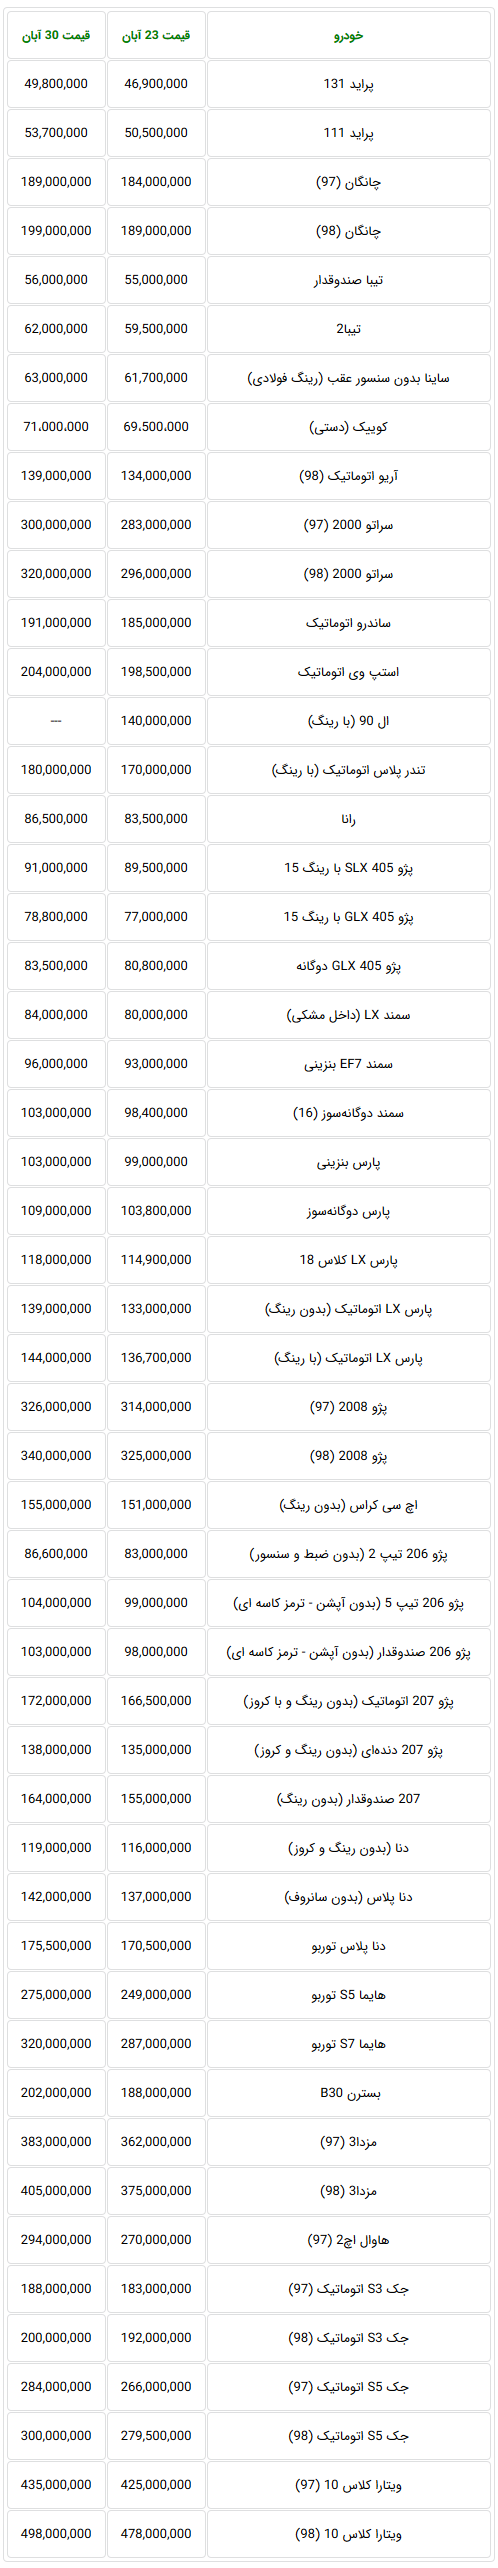 جدول آخرین لیست قیمت خودروهای داخلی در بازار تهران